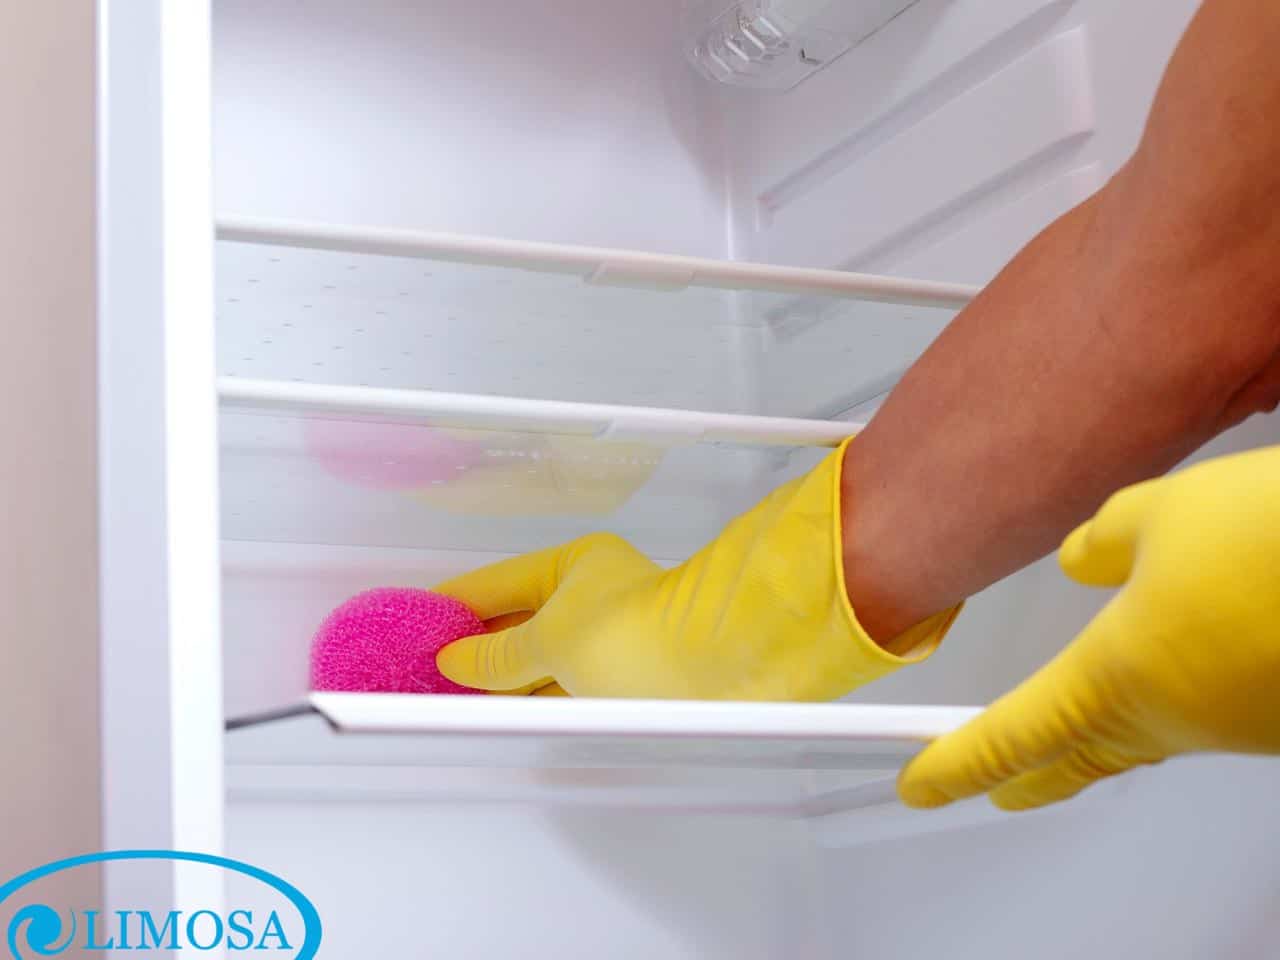 Dịch vụ vệ sinh tủ lạnh có mặt tại Limosa